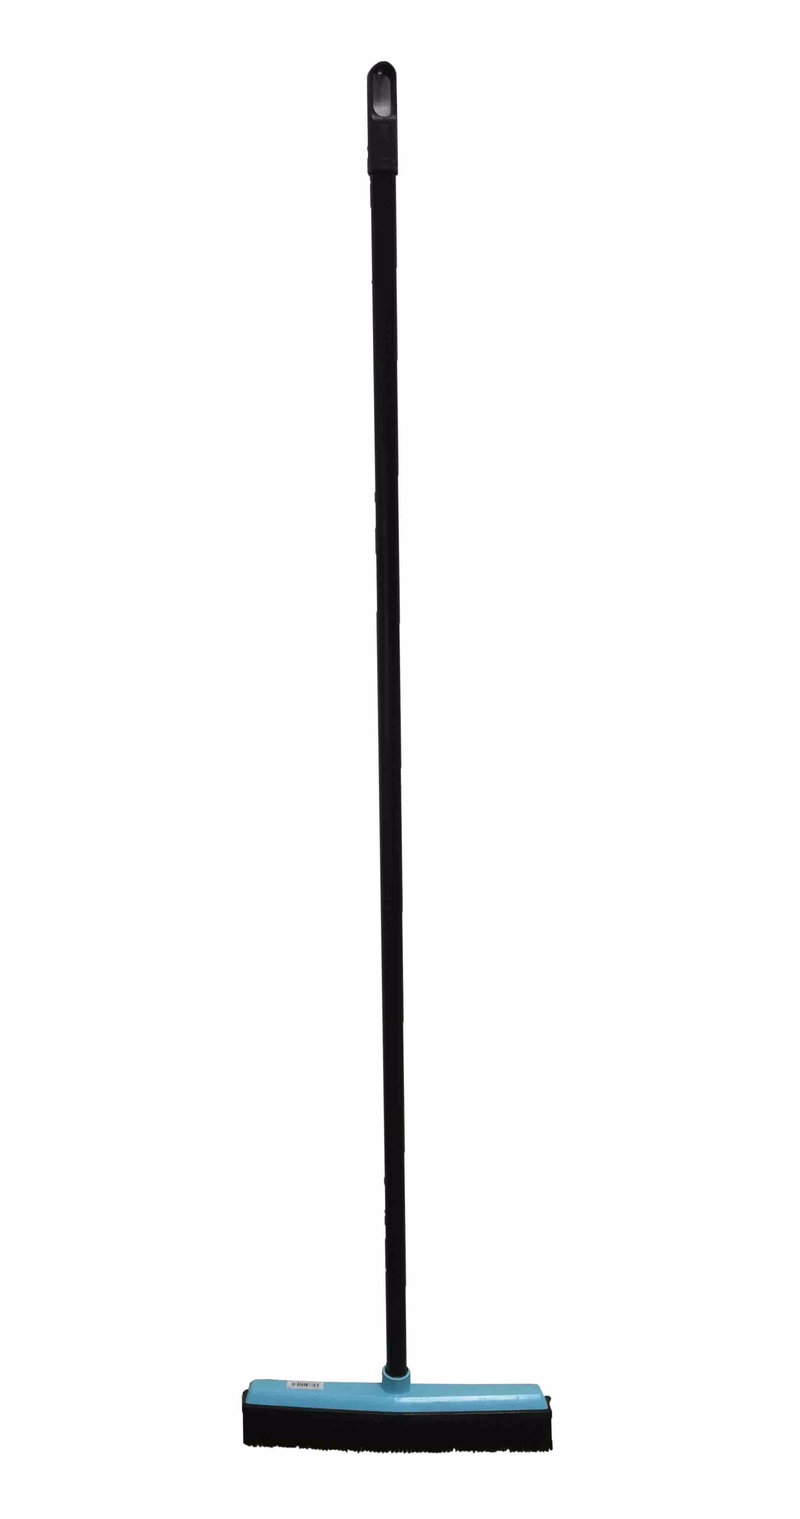 Smeták gumový + tyč 130cm (6ks/krt)